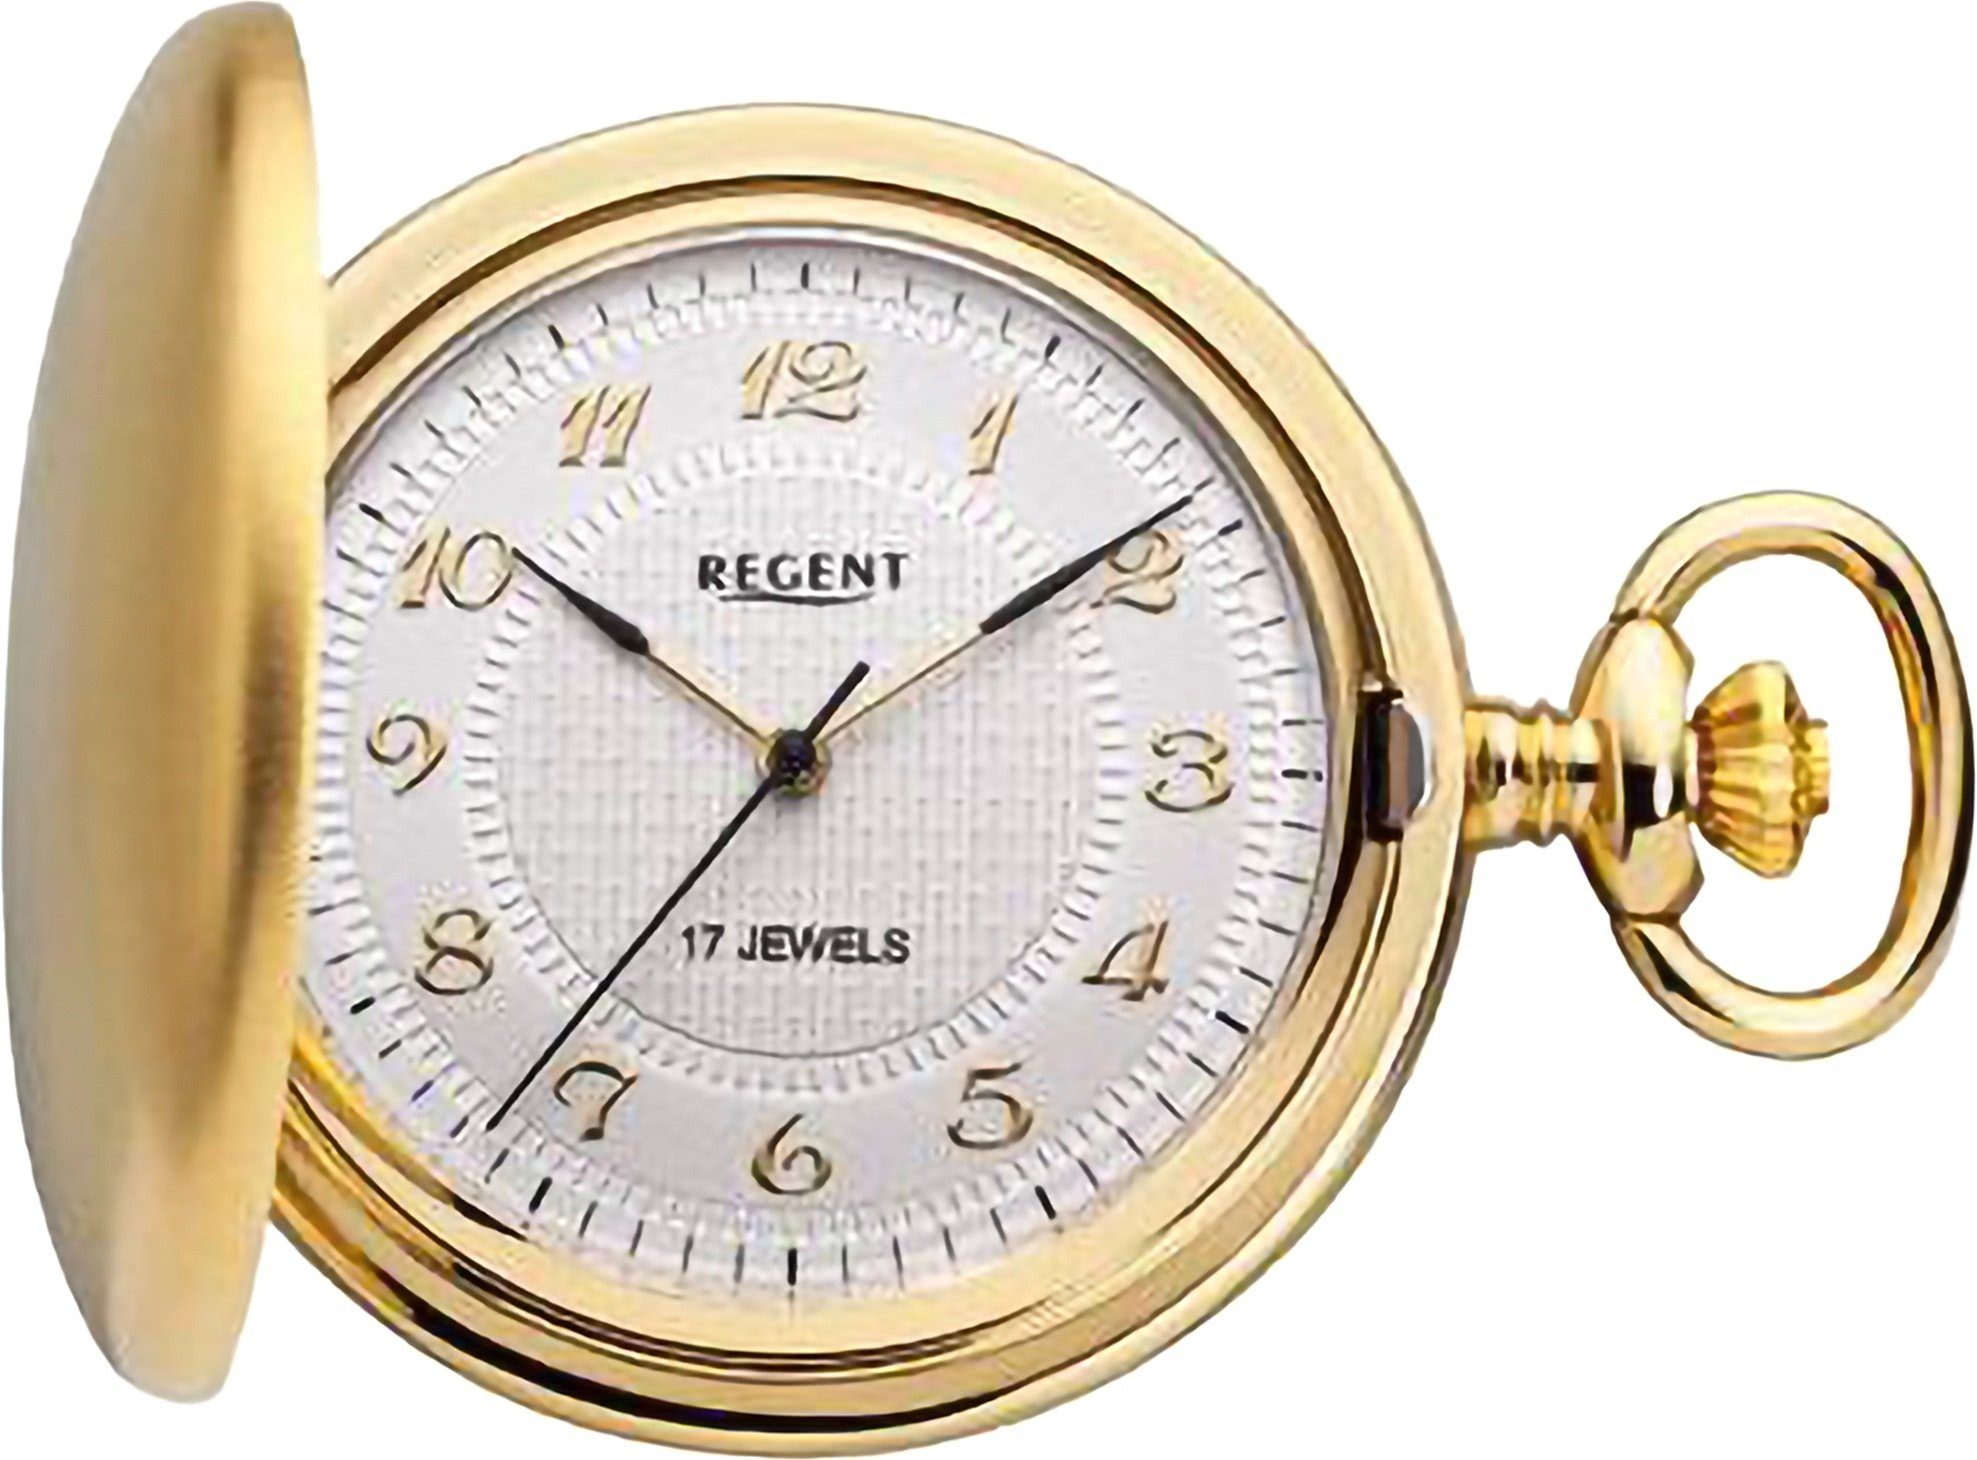 Taschenuhr Regent Gehäuse, Elegant, Herren (ca. Regent extra Herren Metall, Taschenuhr Analog Uhrzeit 44mm), groß rund, Taschenuhr (Analoguhr),